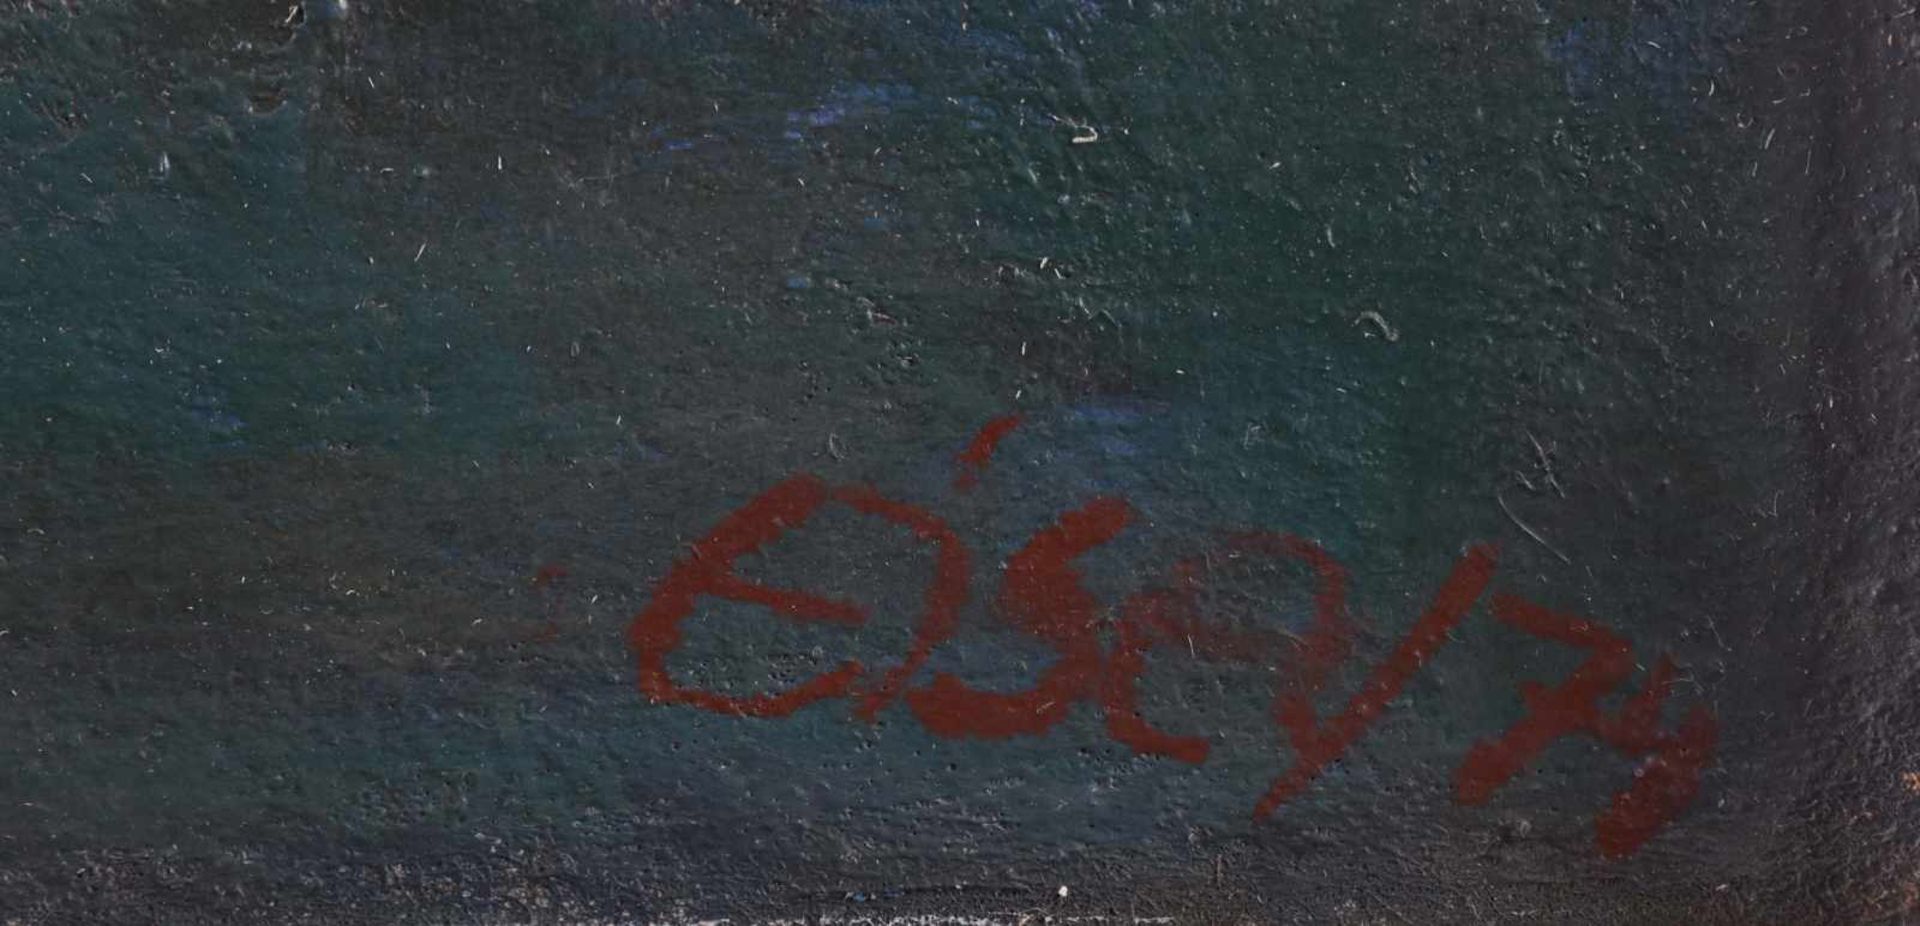 Fritz EISEL (1929-2010)"Mond über dem roten Fluss"painting oil / hardboard, 70 cm x 90 cm, with - Bild 4 aus 5